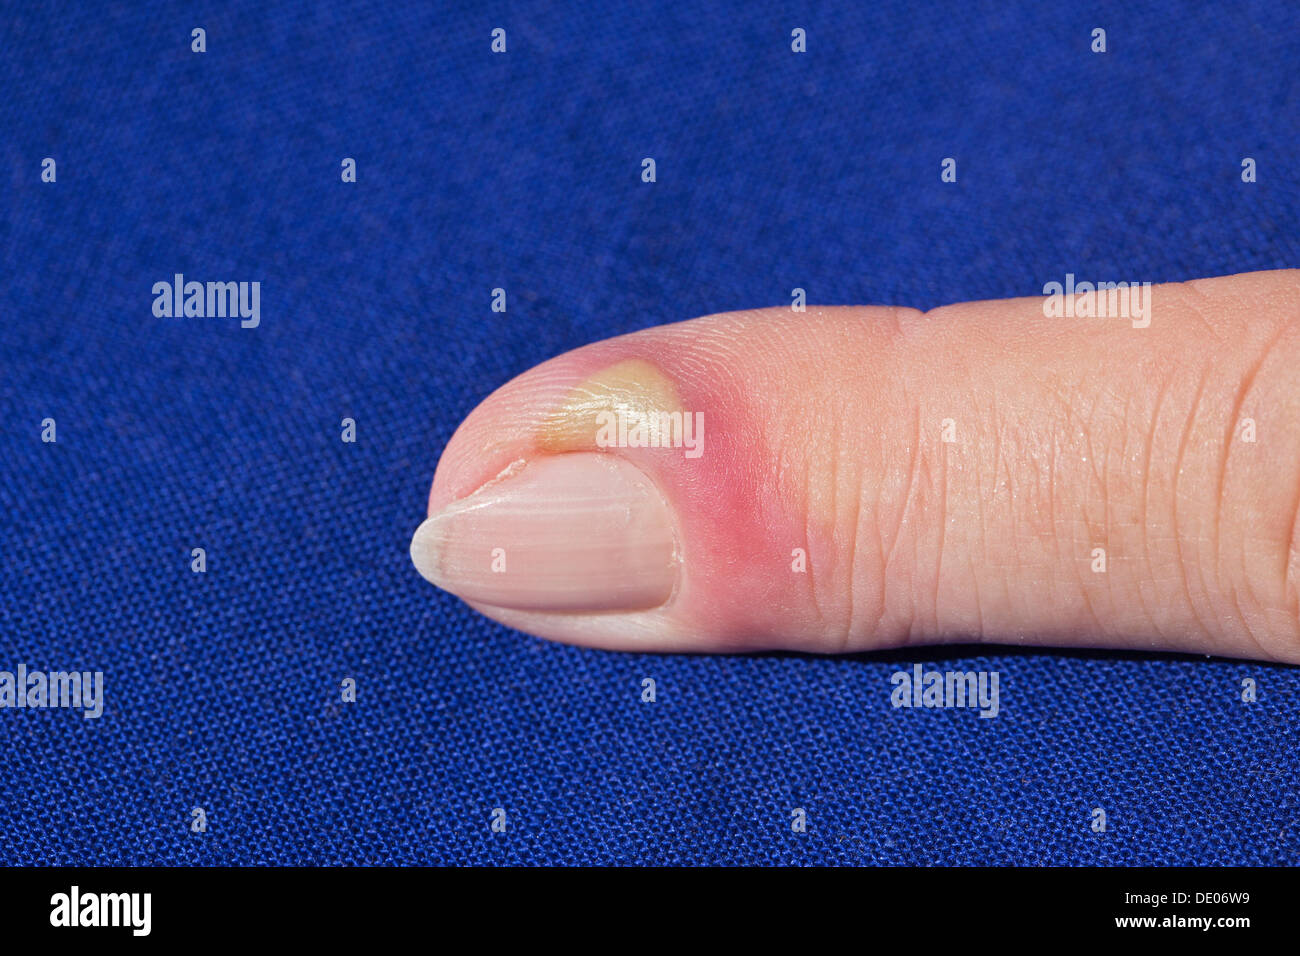 La infección bacteriana, la inflamación, el dedo índice, pus, absceso Foto de stock